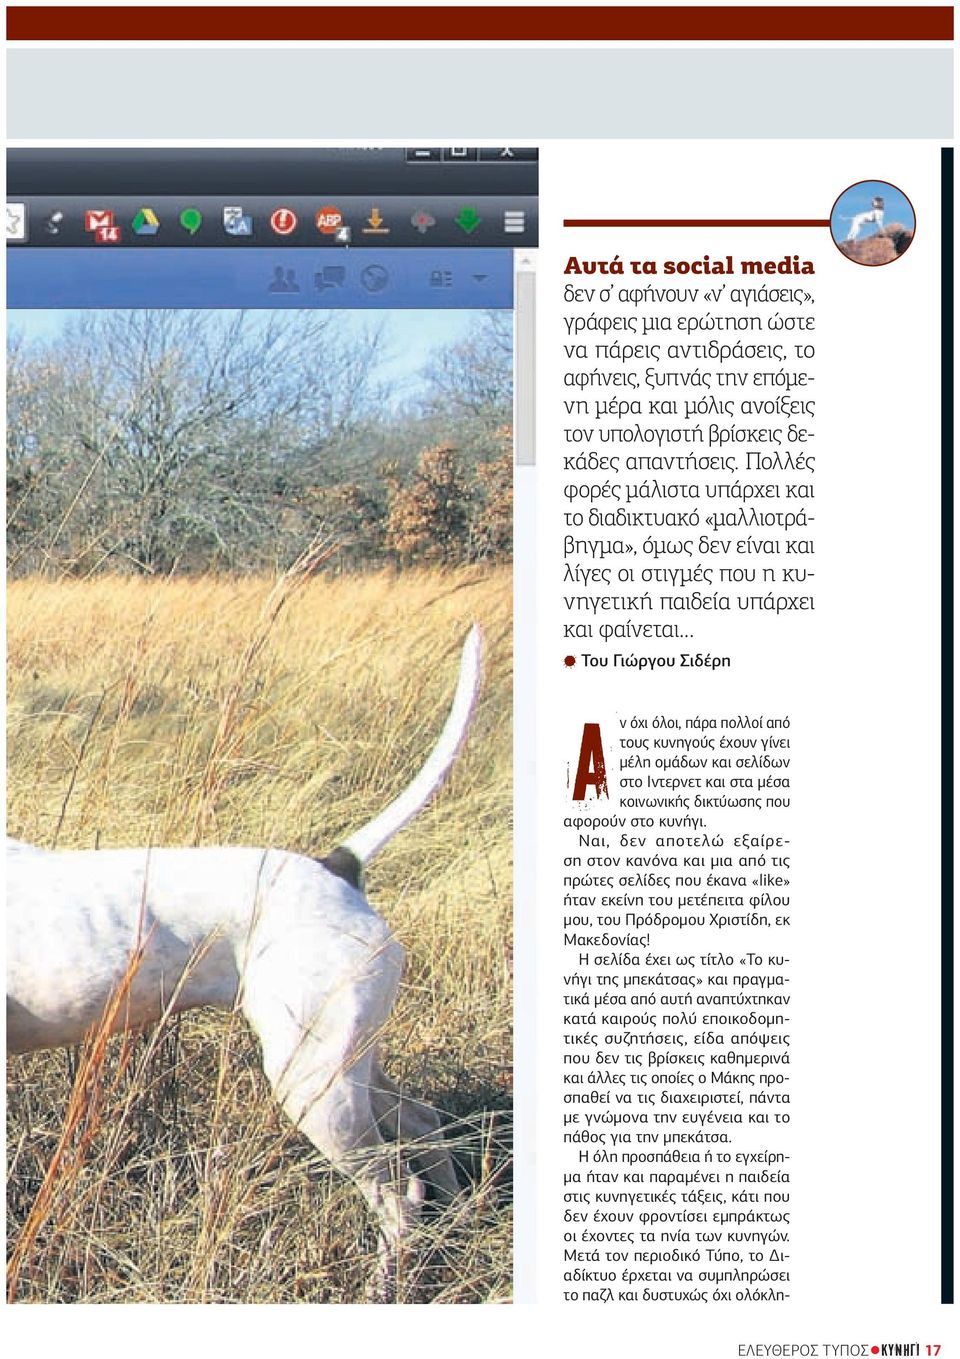 τους κυνηγούς έχουν γίνει µέλη οµάδων και σελίδων στο Ιντερνετ και στα µέσα κοινωνικής δικτύωσης που αφορούν στο κυνήγι.